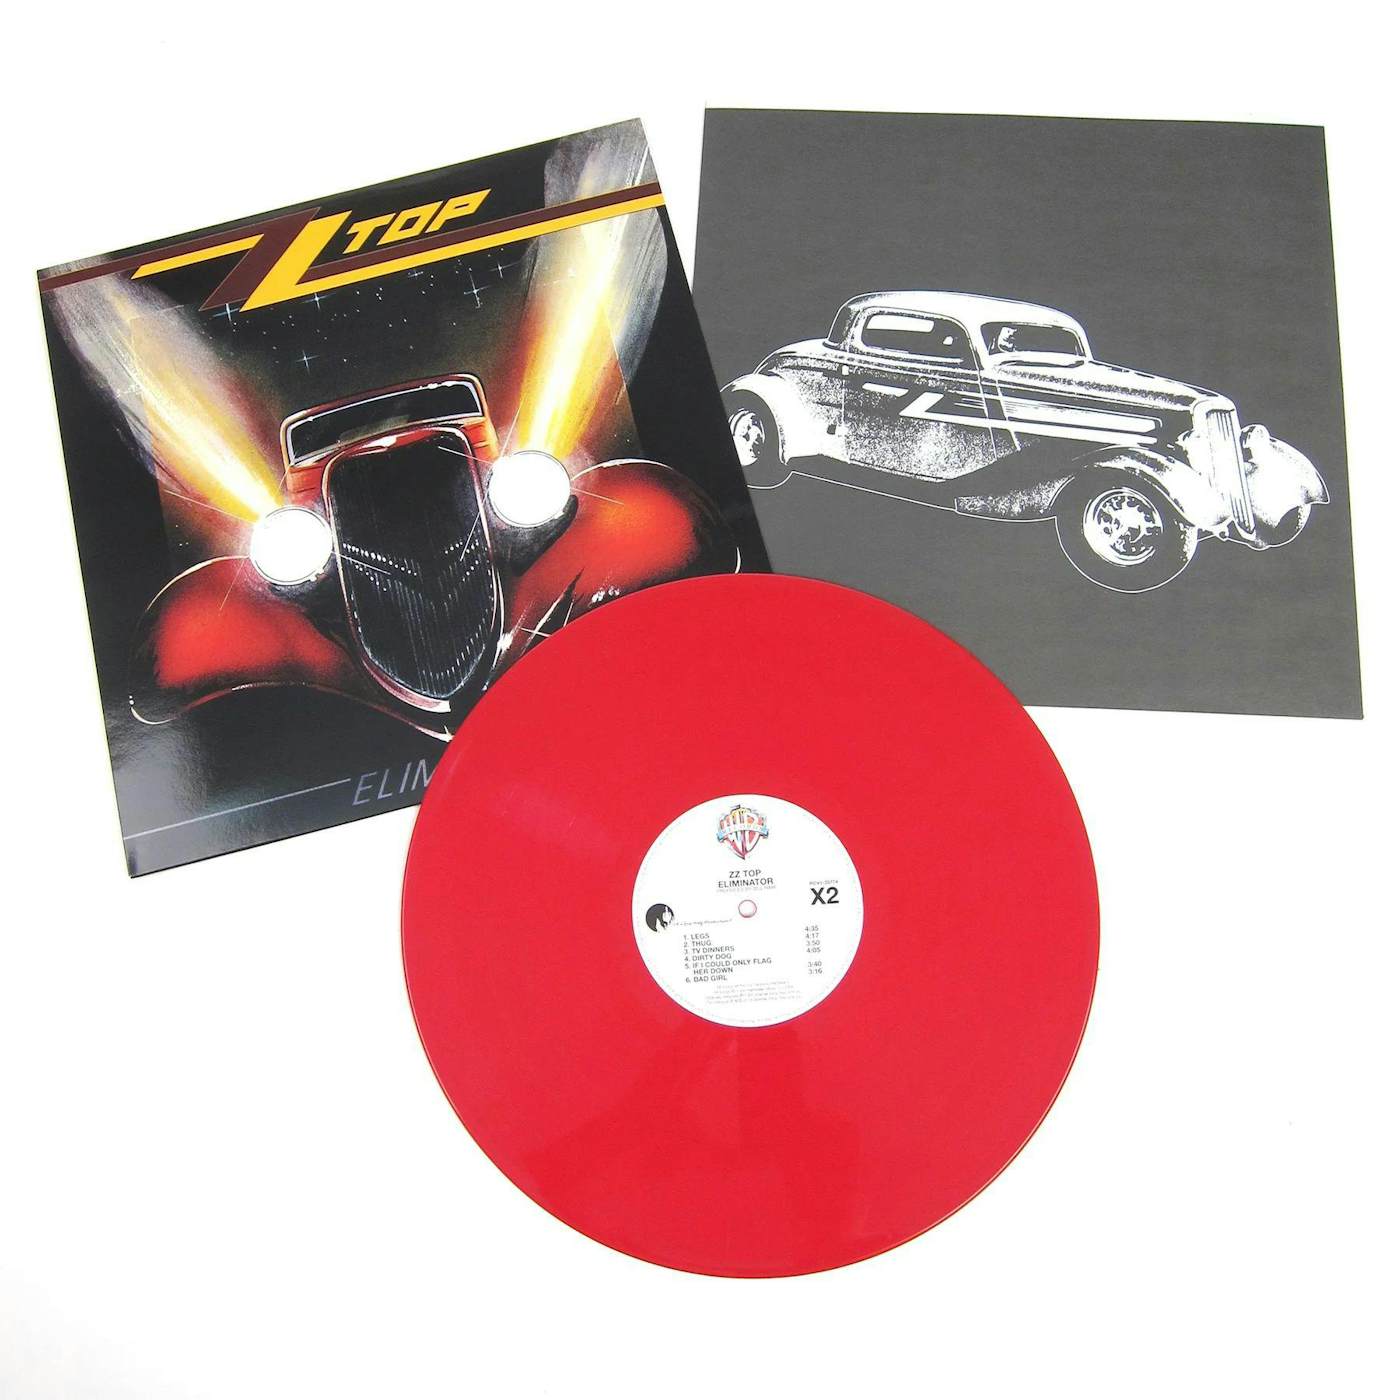 ZZ Top Eliminator Vinyl Record